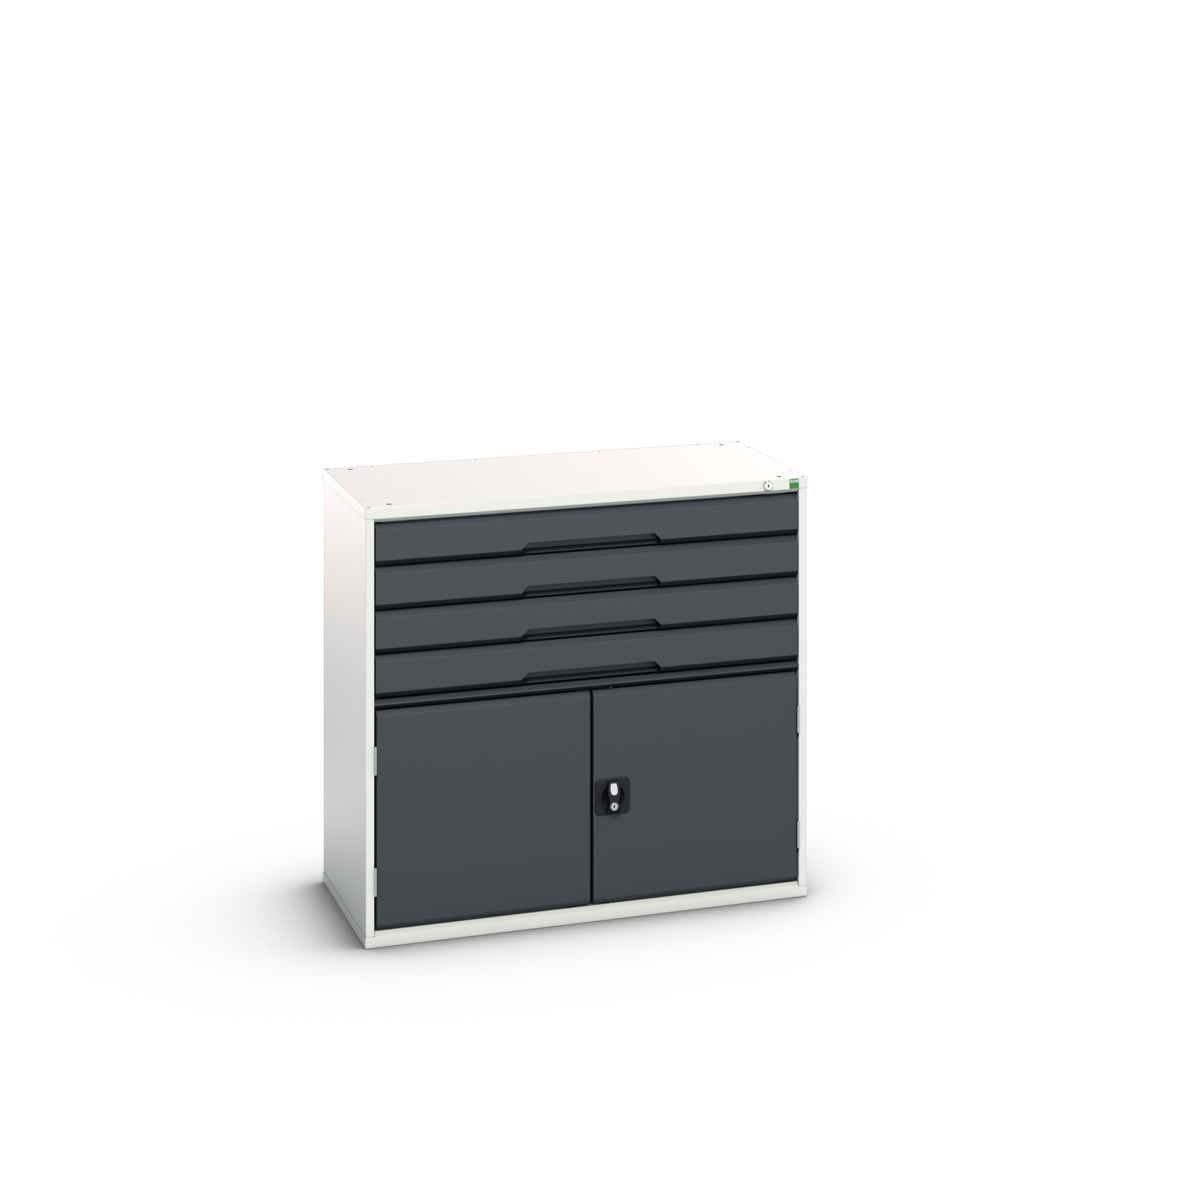 16925565. - verso drawer-door cabinet